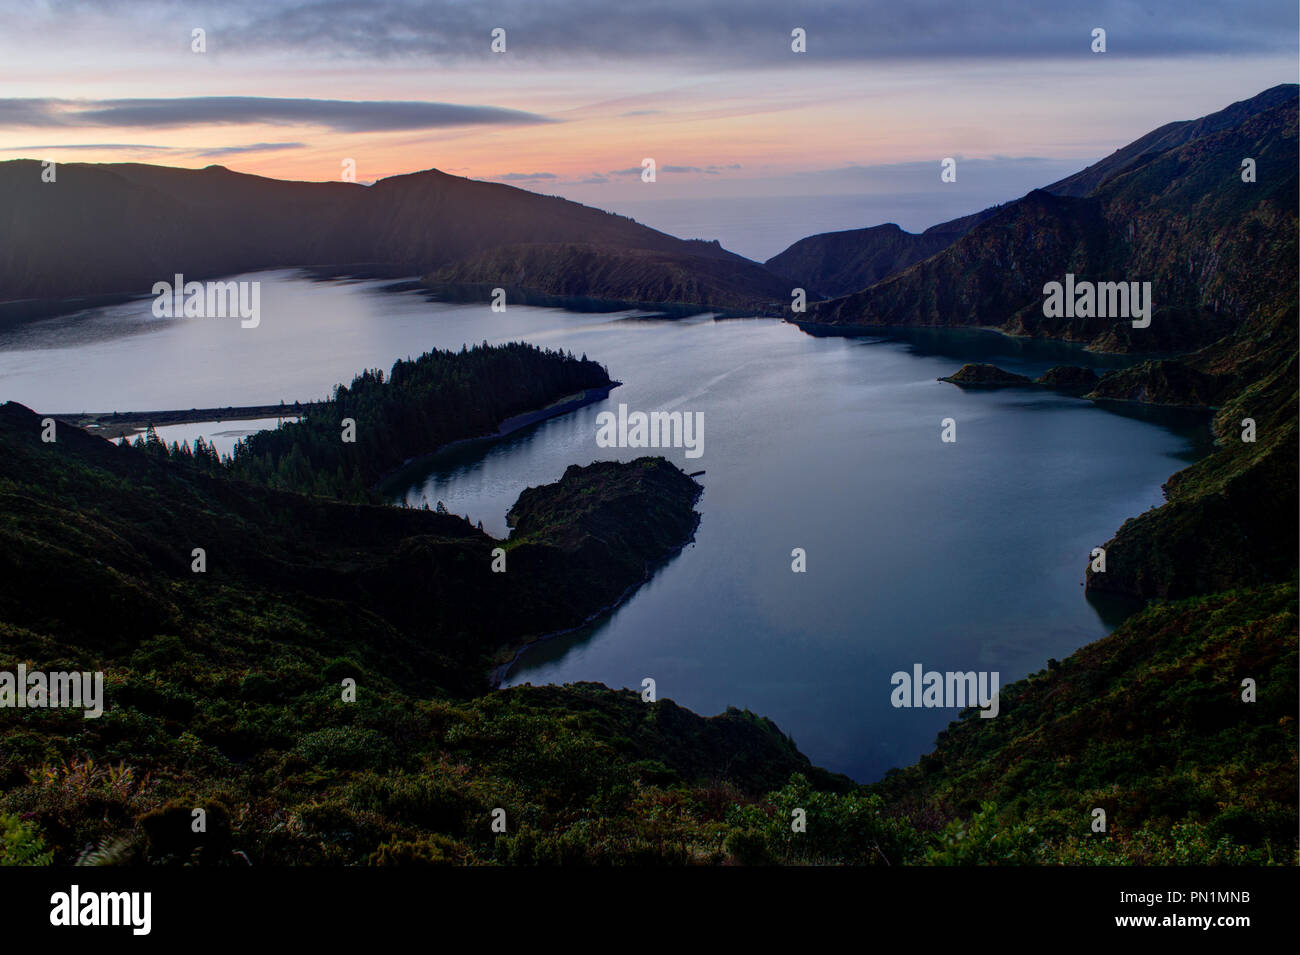 Panorama d'un lac sur une île volcanique pendant le lever du soleil. Banque D'Images